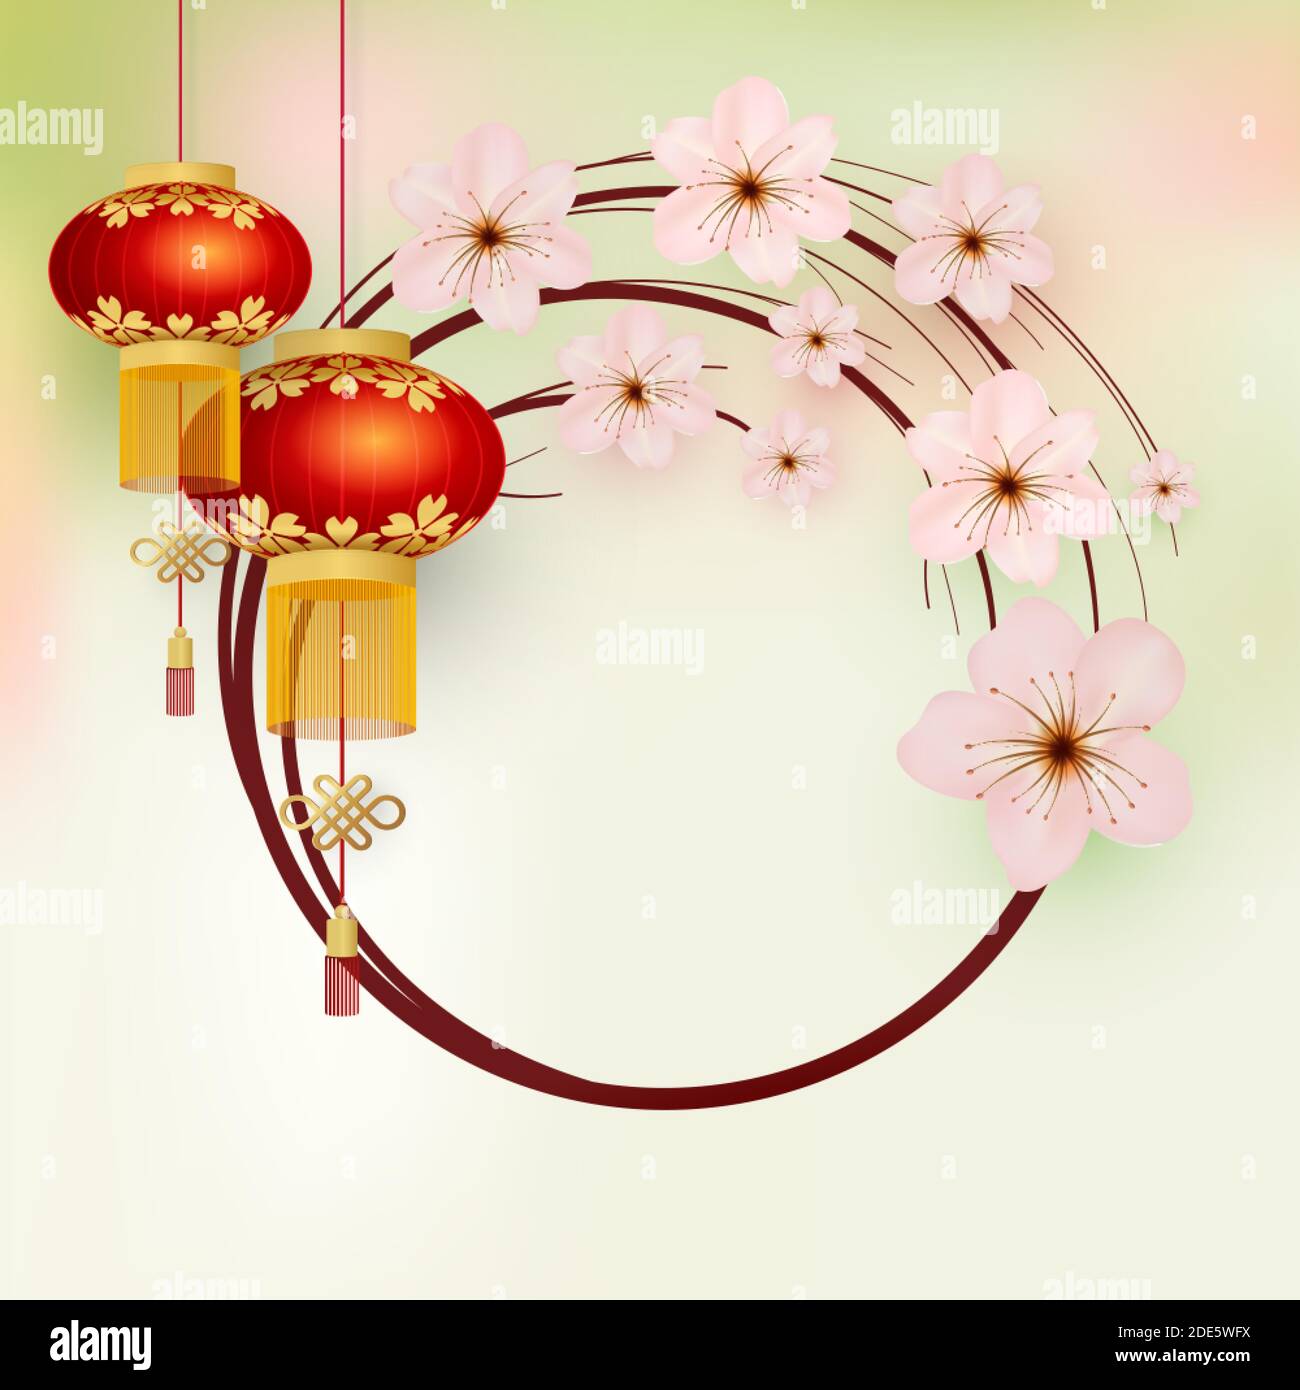 Cadre fleuri. Lanternes chinoises et fleurs de sakura. Modèle pour une carte de vacances. Fond asiatique. Style rétro. Vecteur Illustration de Vecteur